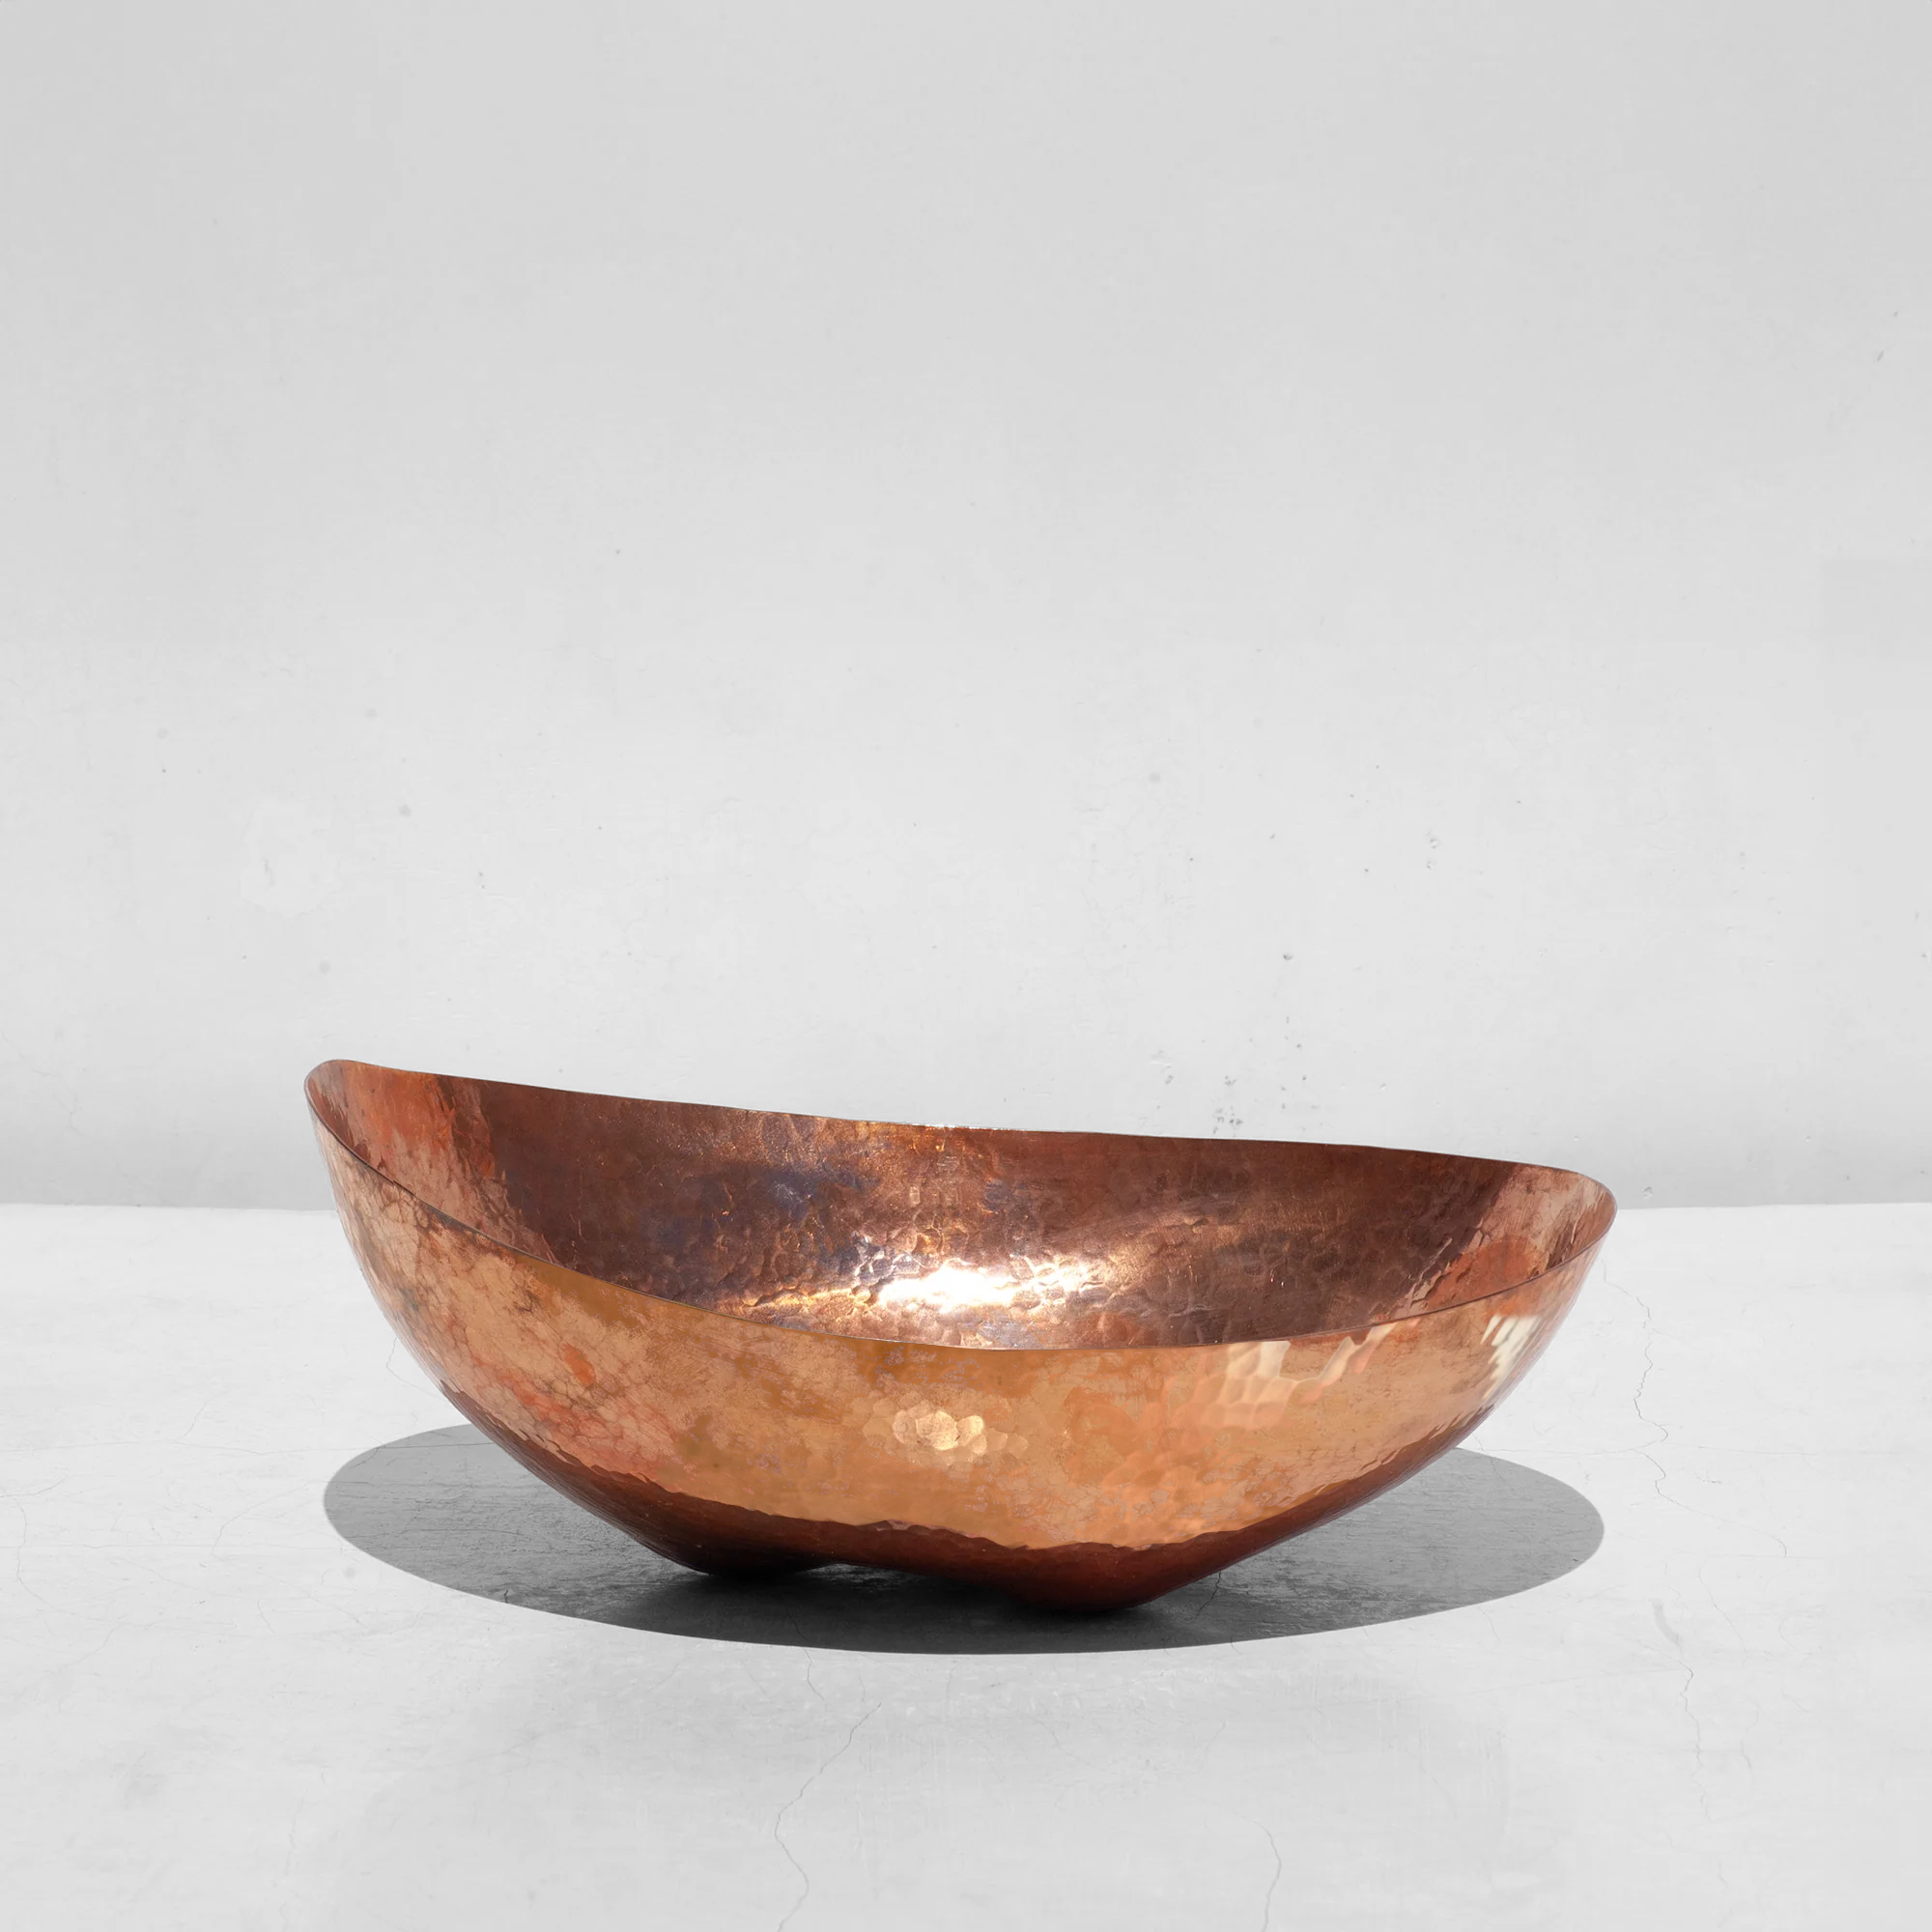 Bermuda Hammered Copper fruit bowl